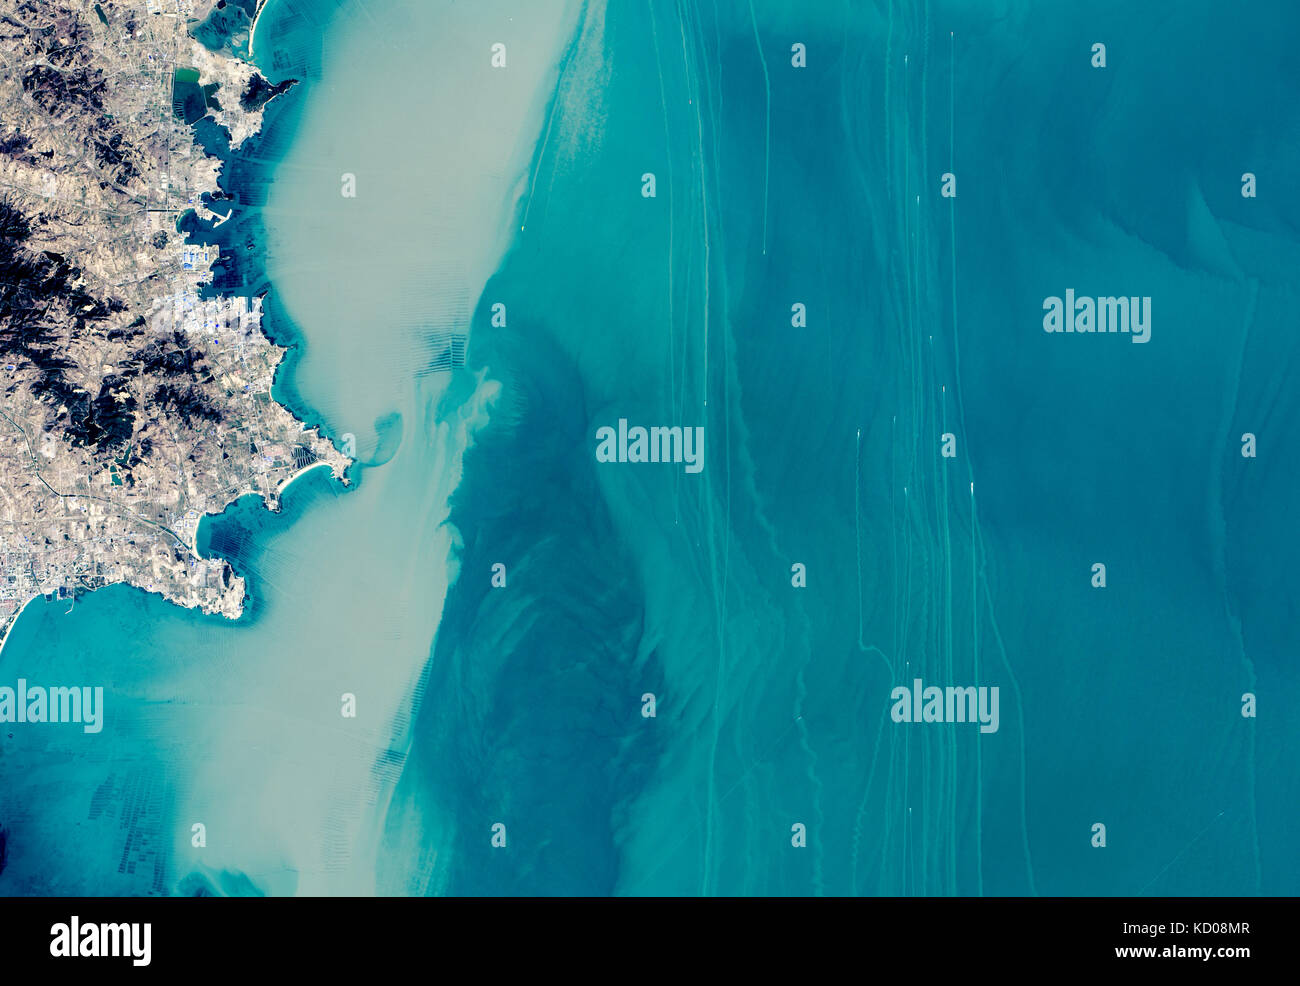 NASALandsat Bildergalerie Home Über Nachrichten wie Landsat hilft Bildung Bilder Daten von Landsat 8 Landsat 9 Suche die Galerie... Suche erworben. Februar Stockfoto